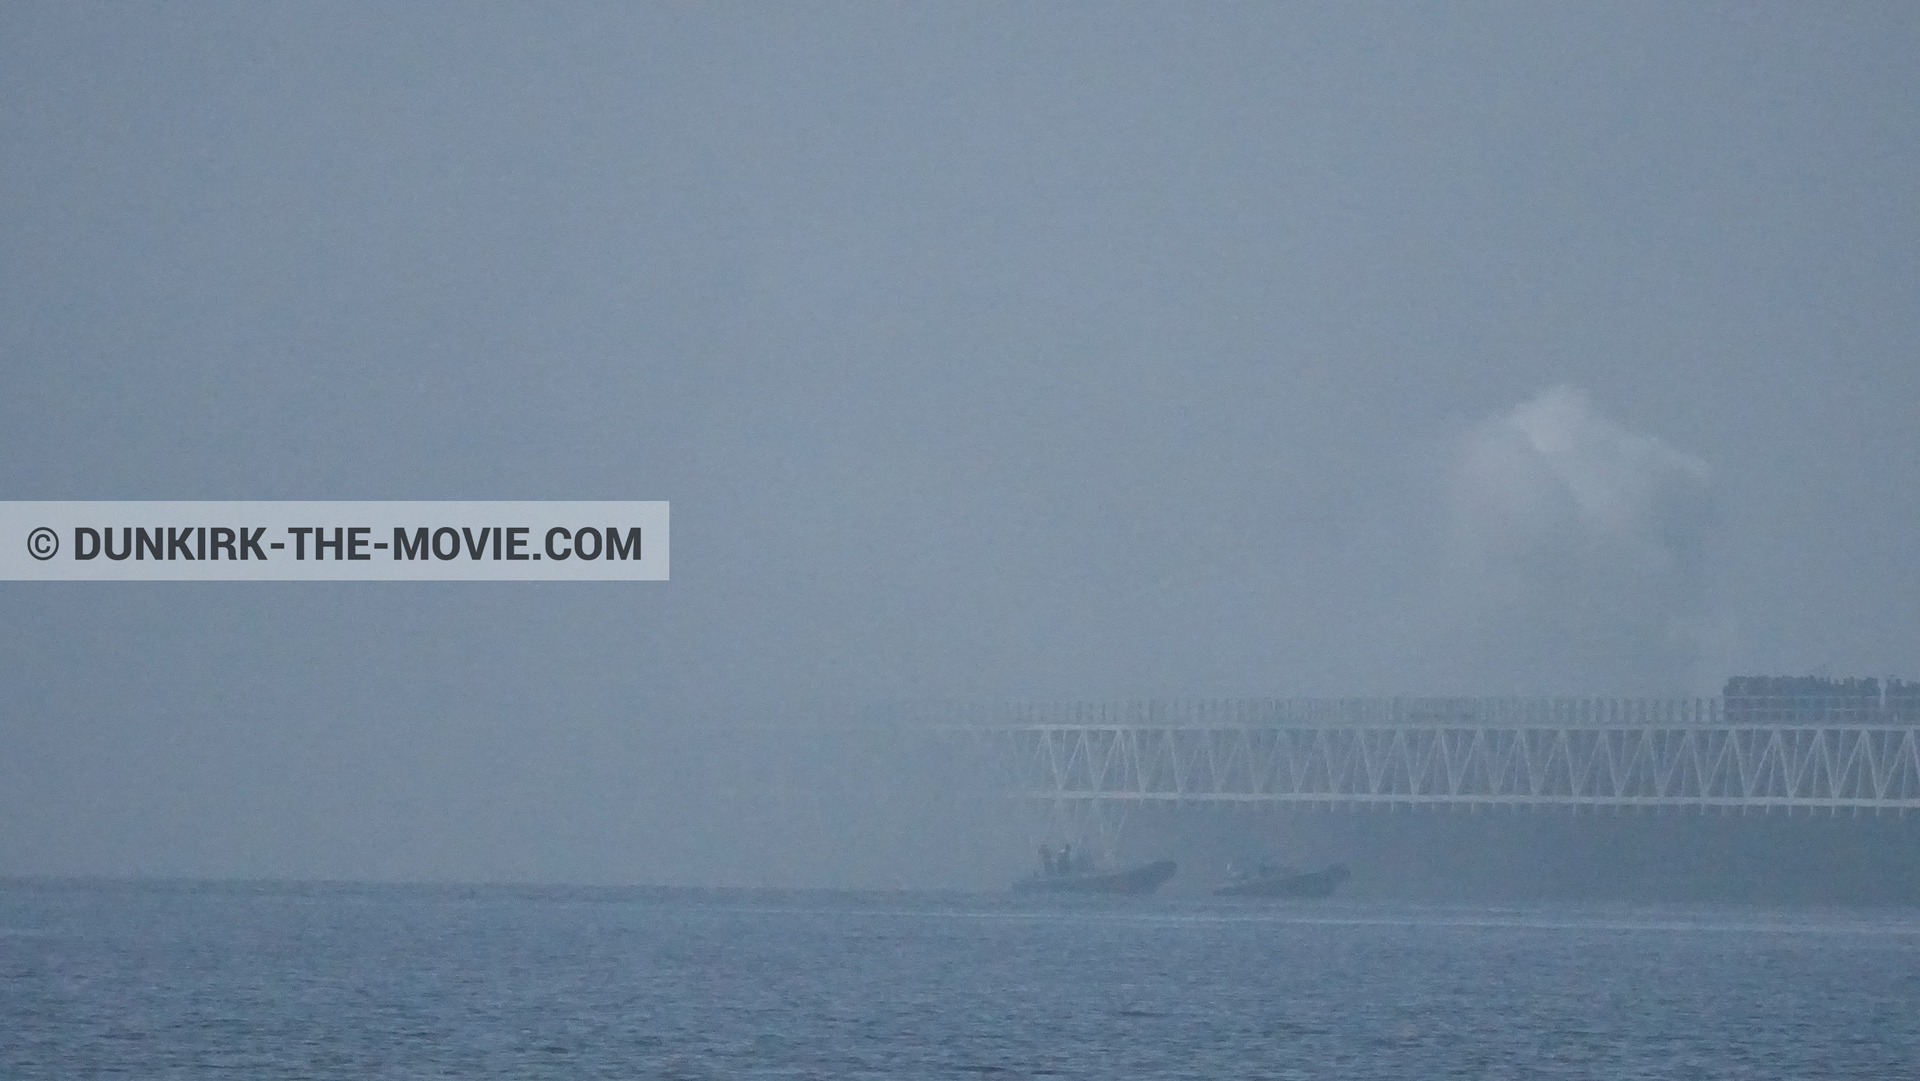 Fotos con humo blanco, muelle del ESTE, zodiaco,  durante el rodaje de la película Dunkerque de Nolan